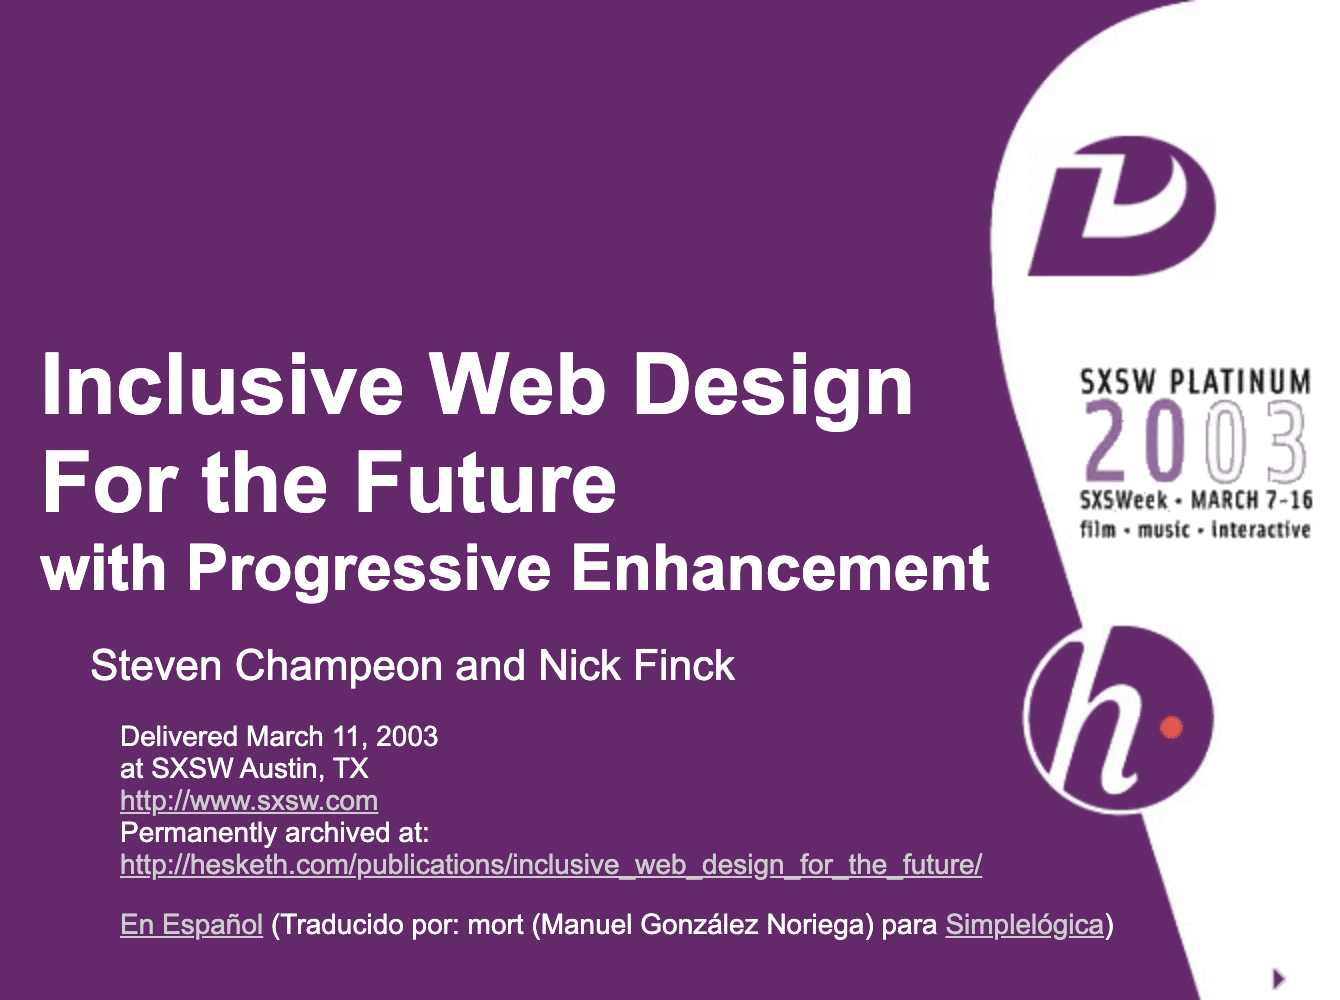 採用先進增強技術的多元包容網頁設計，邁向未來。由 Finck 和 Champeon 撰寫的原始簡報標題投影片。